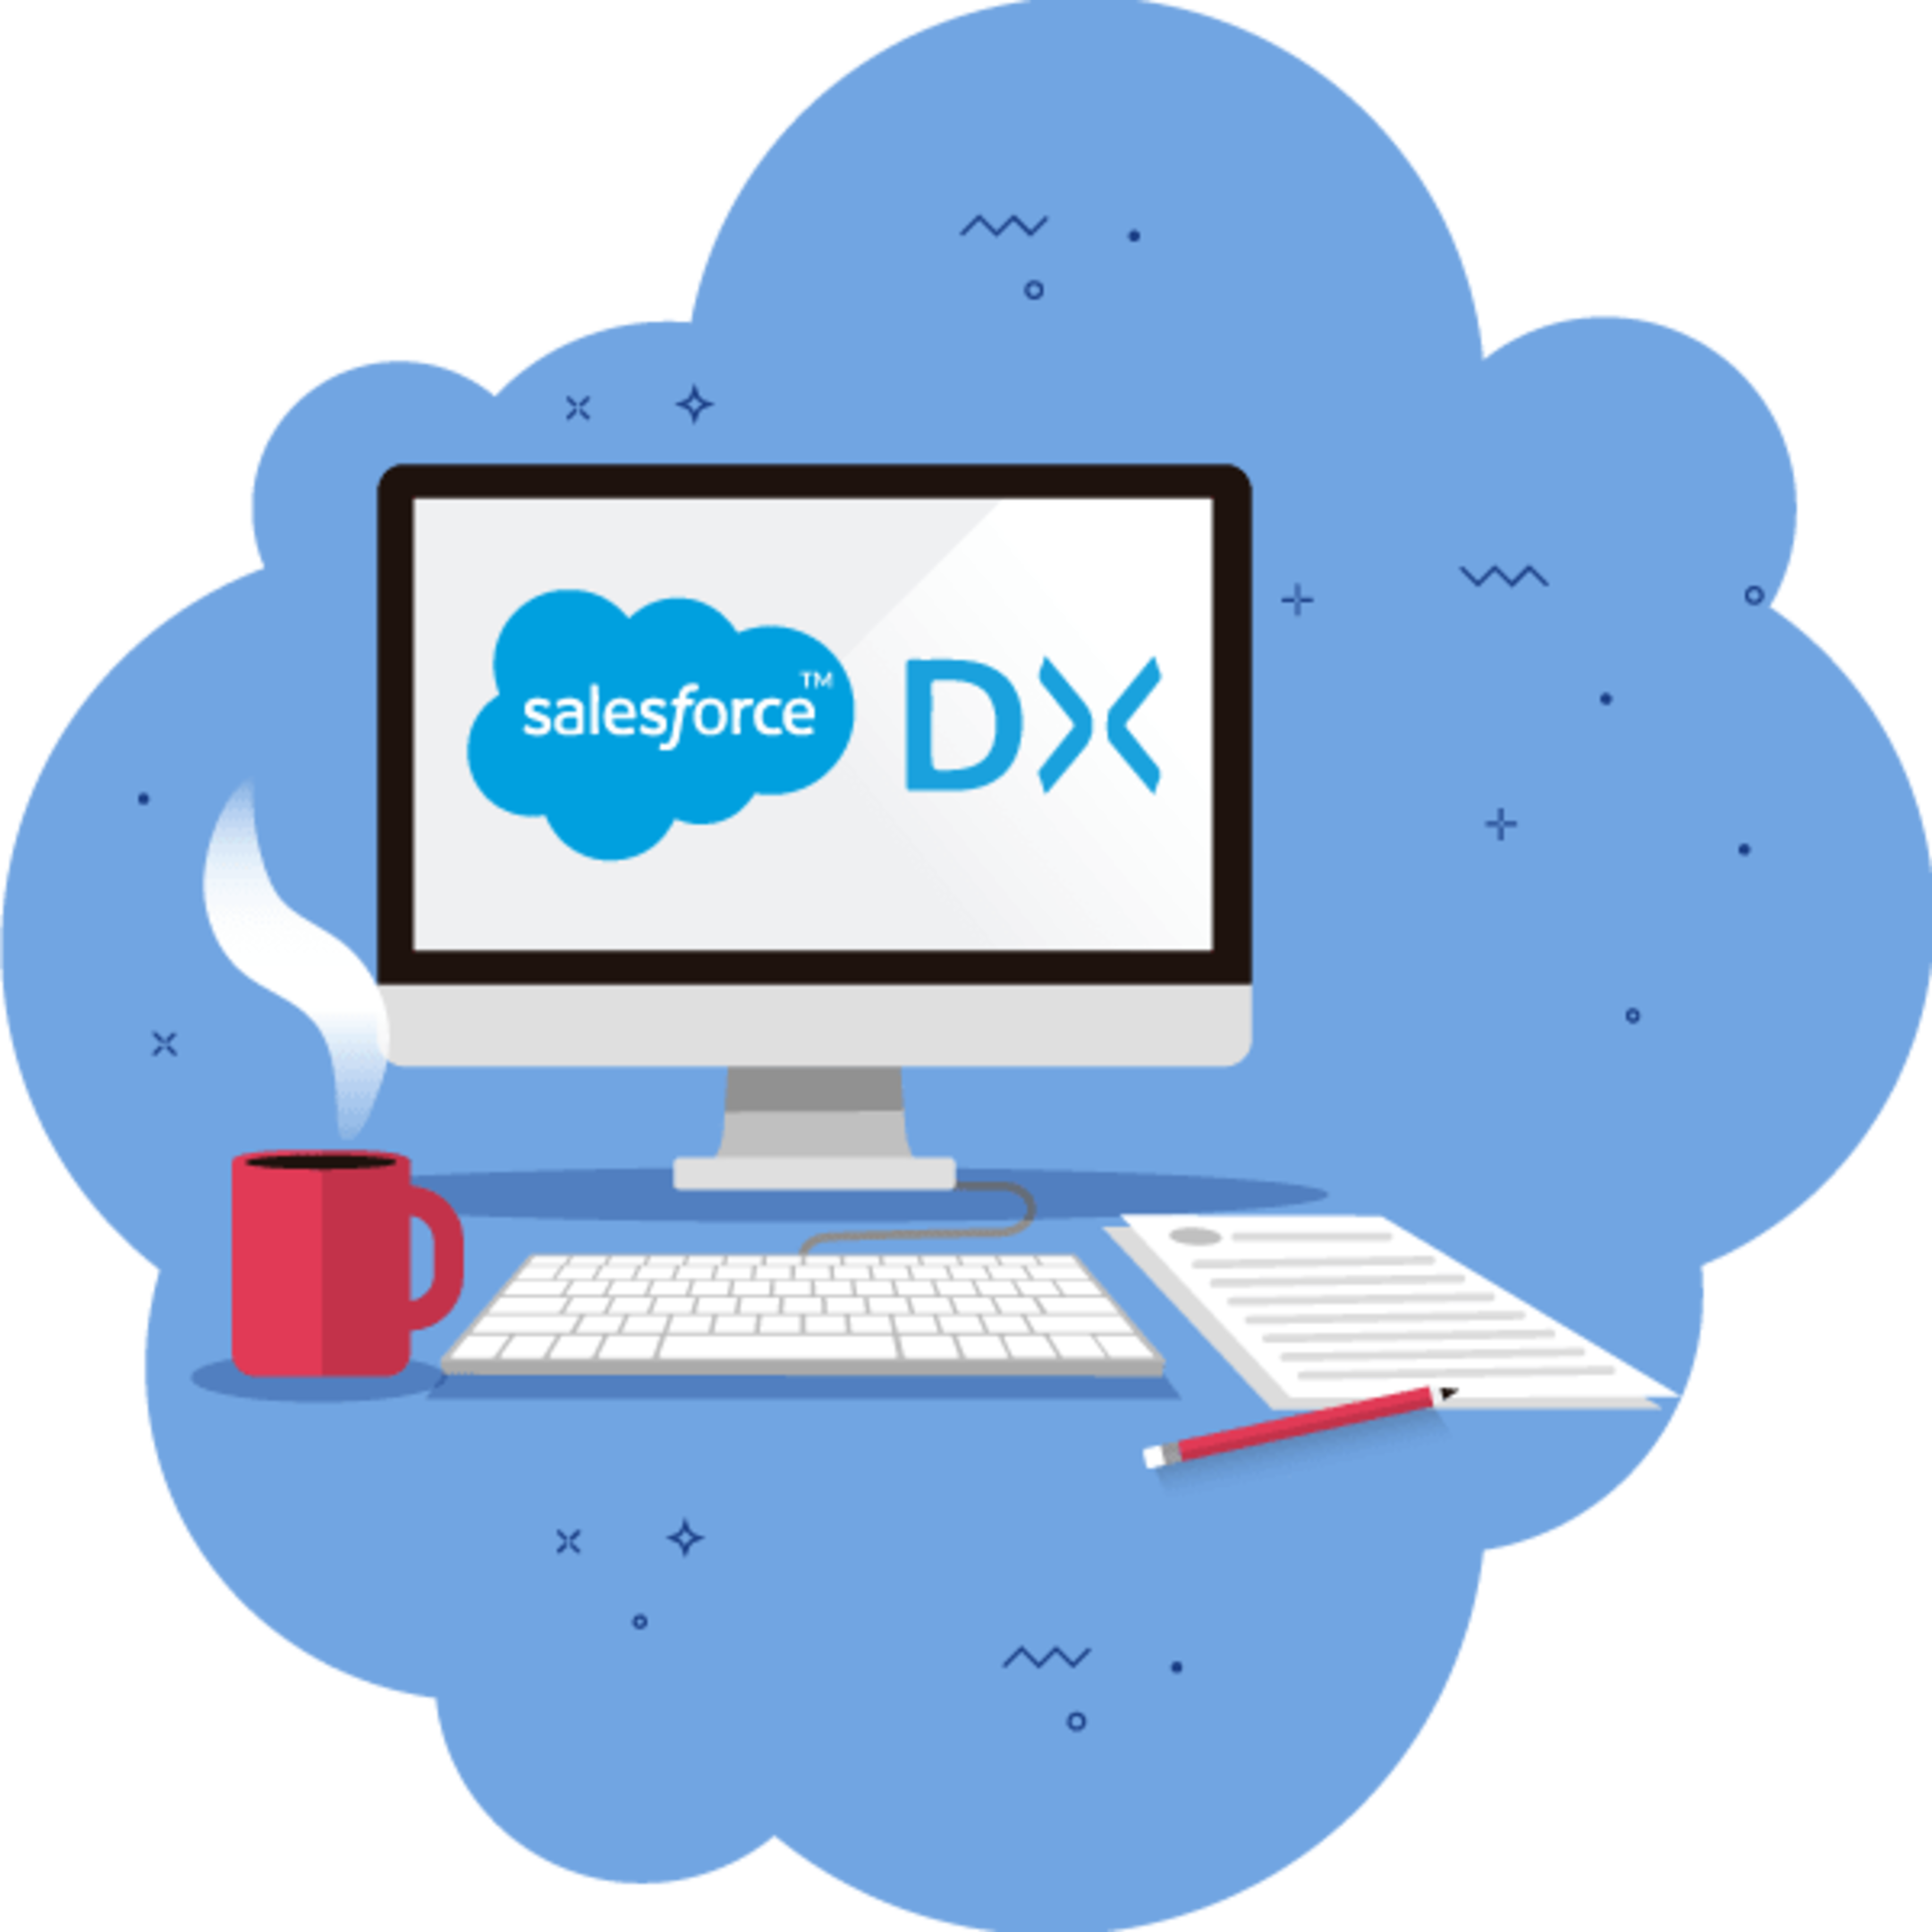 See Learn Salesforce Development with Salesforce DX at Trailblazer